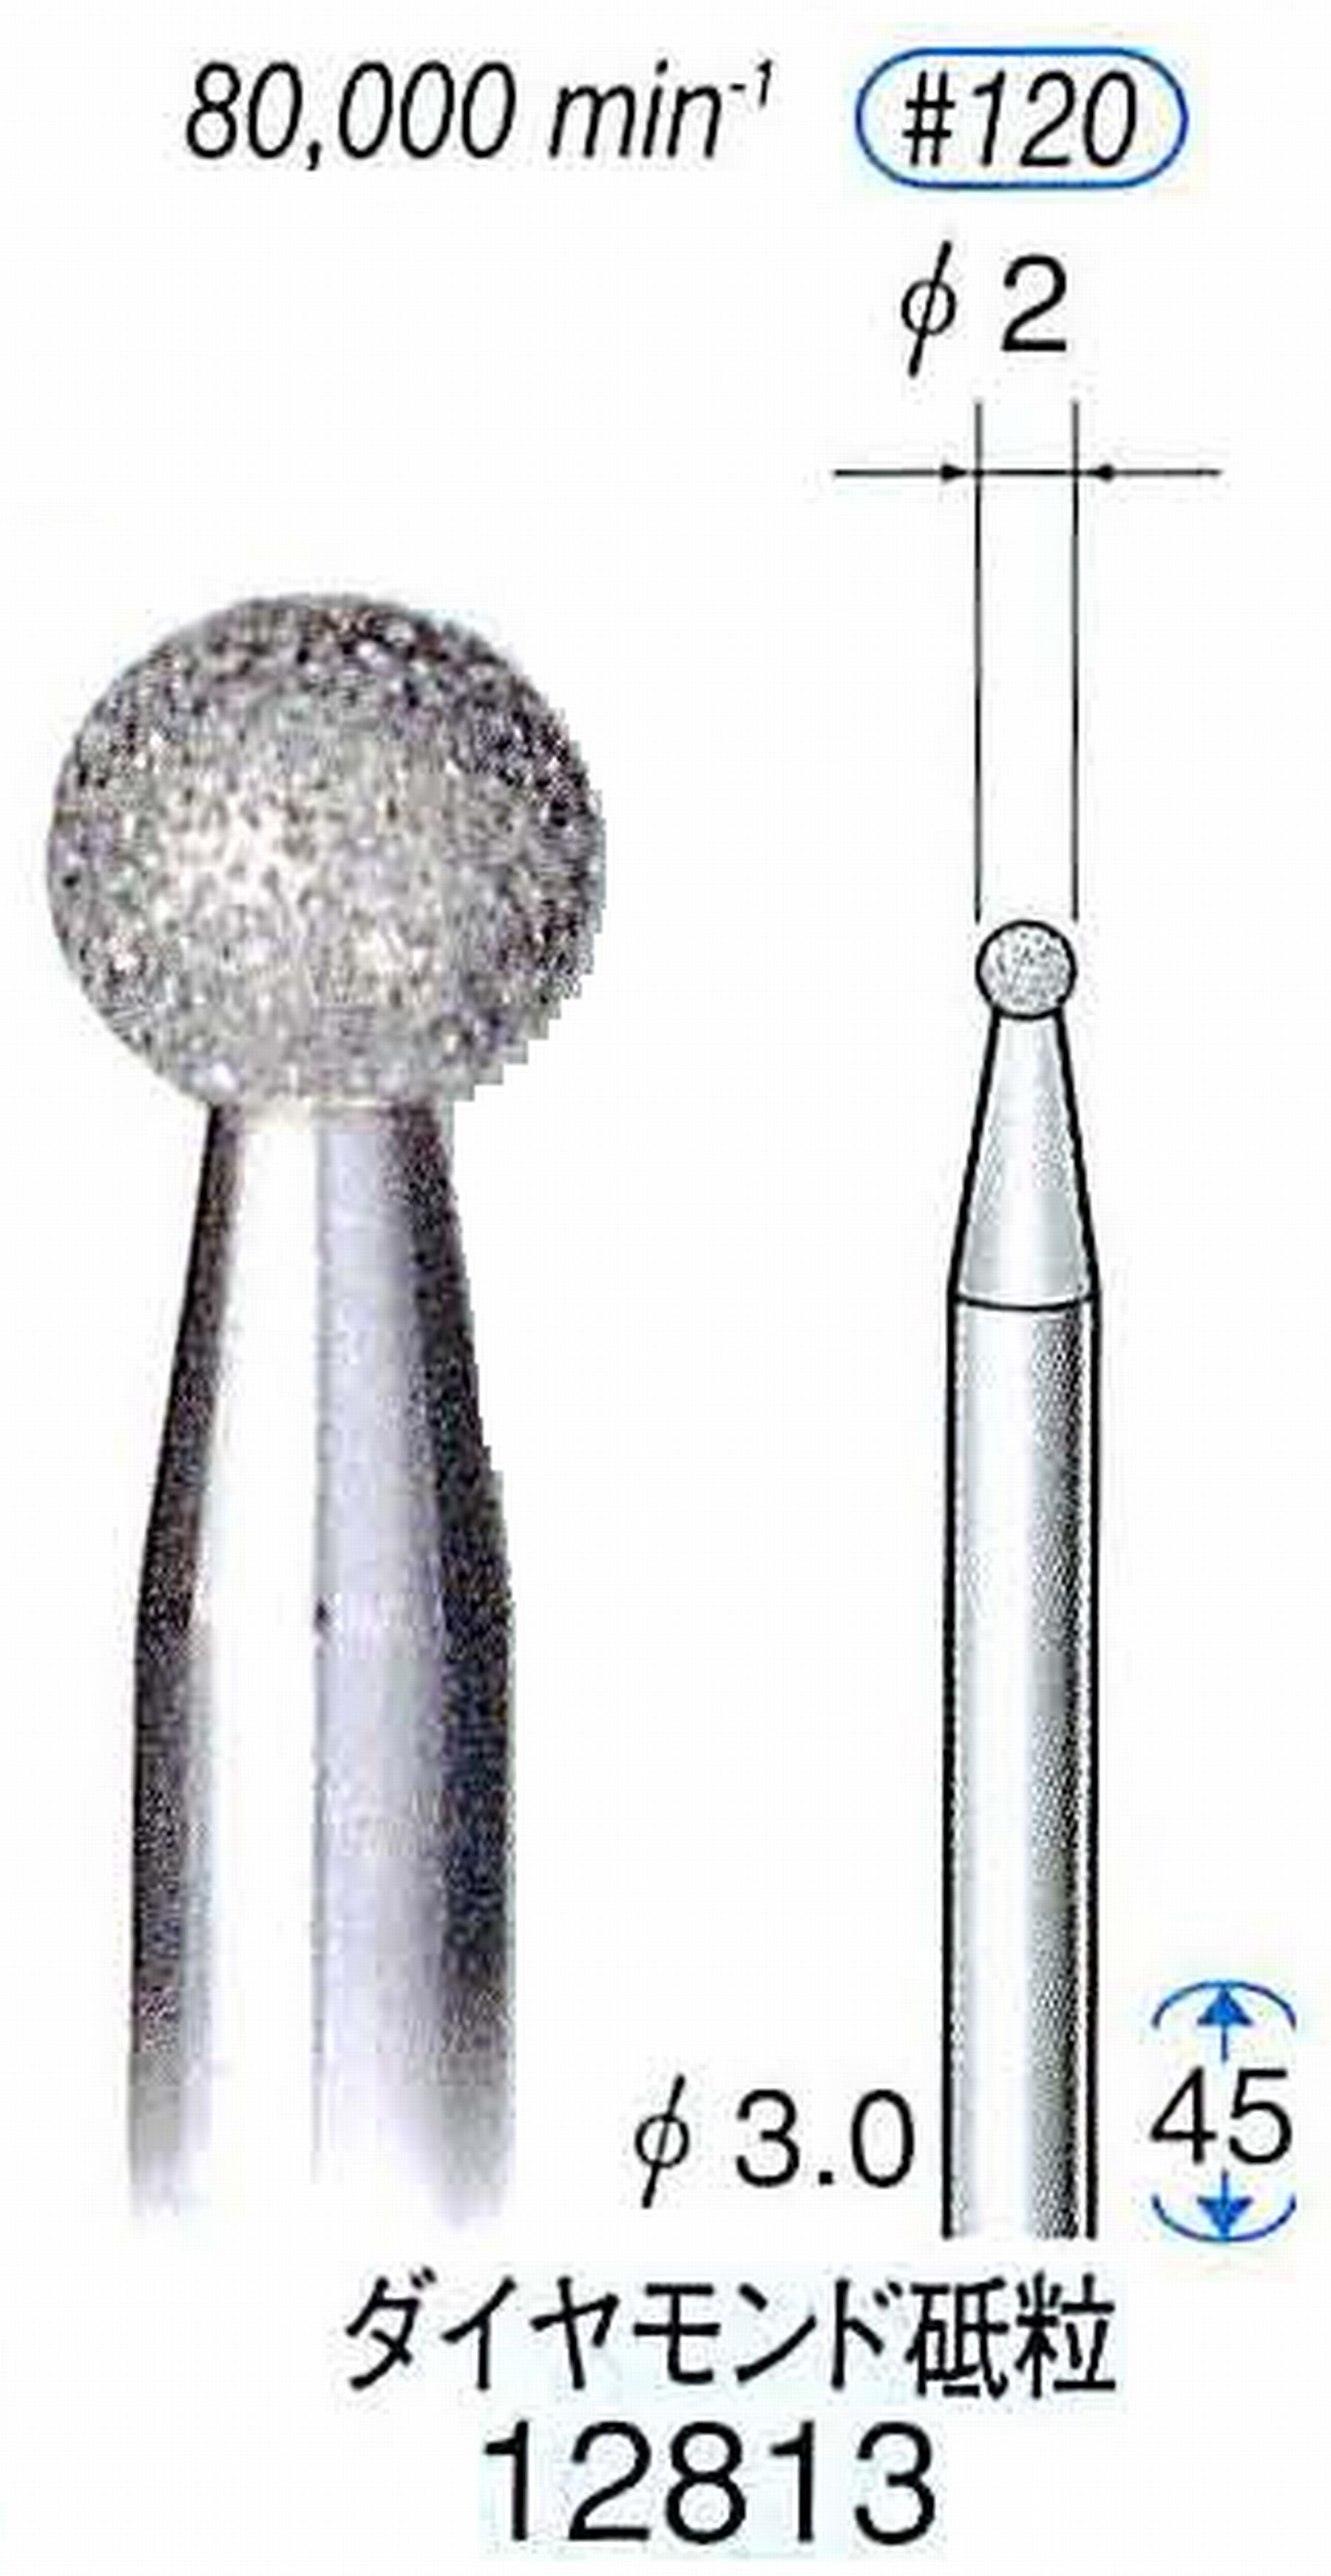 ナカニシ/NAKANISHI クラフト・ホビー用ダイヤモンドバー ダイヤモンド砥粒 軸径(シャンク)φ3.0mm 12813